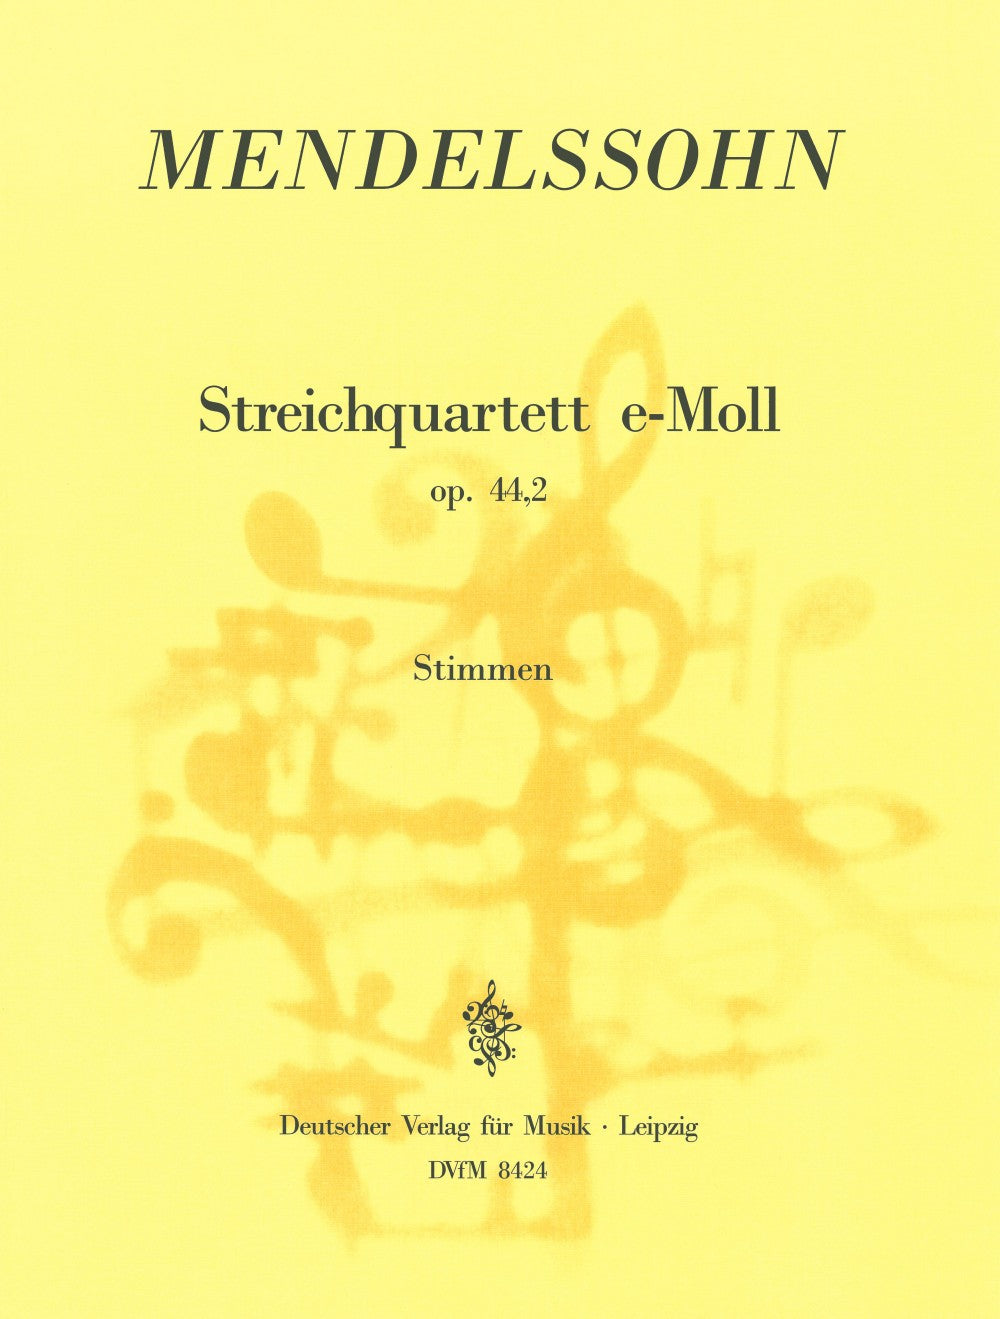 Mendelssohn: String Quartet in E Minor, Op. 44, No. 2